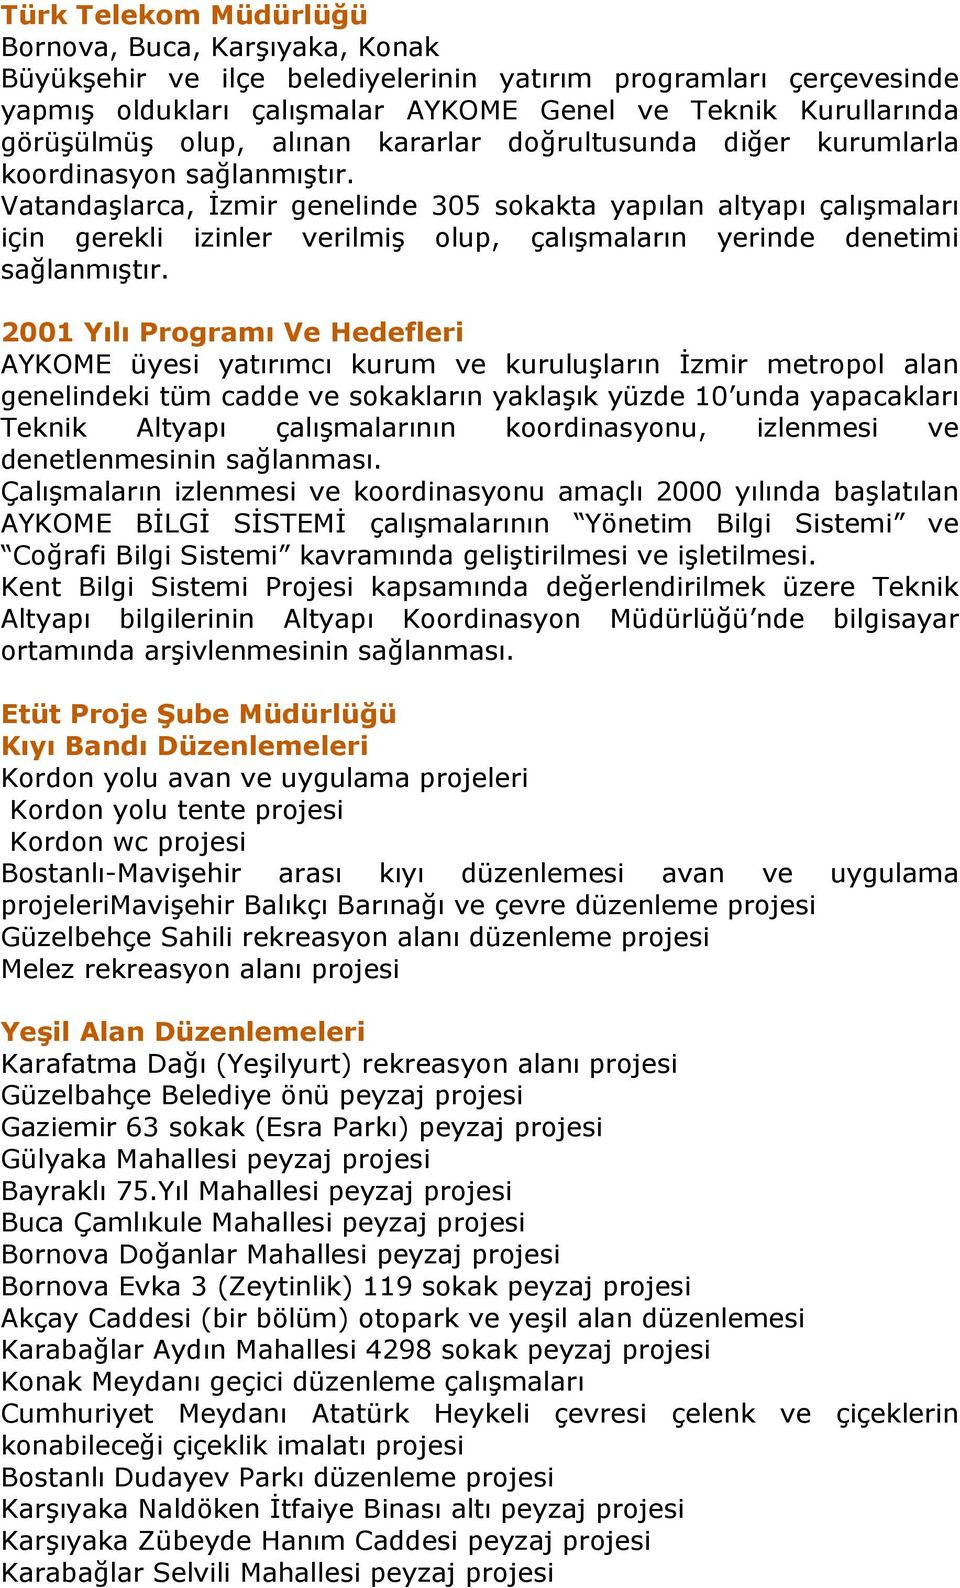 Vatandaşlarca, İzmir genelinde 305 sokakta yapılan altyapı çalışmaları için gerekli izinler verilmiş olup, çalışmaların yerinde denetimi sağlanmıştır.